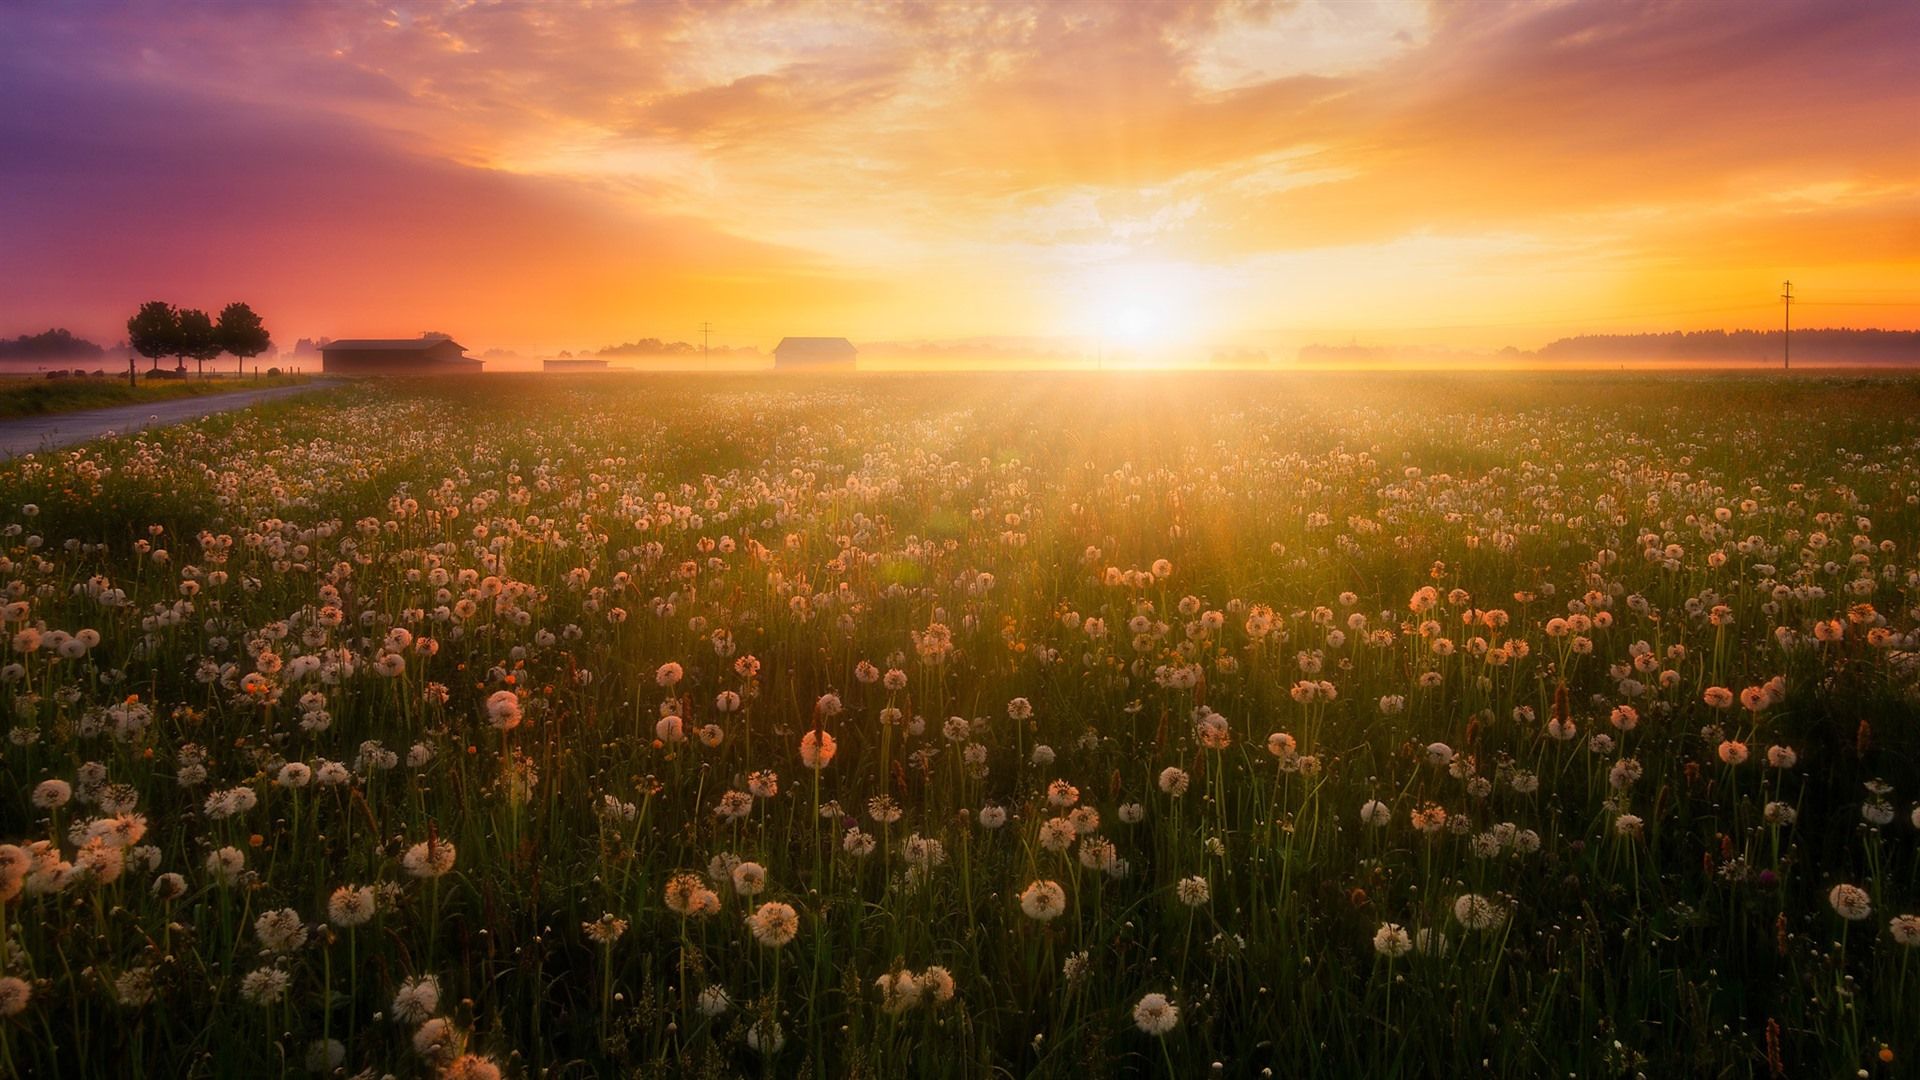 Wallpaper Summer, flowers, fog, dandelions, sunrise 1920x1080 Full HD 2K Picture, Image